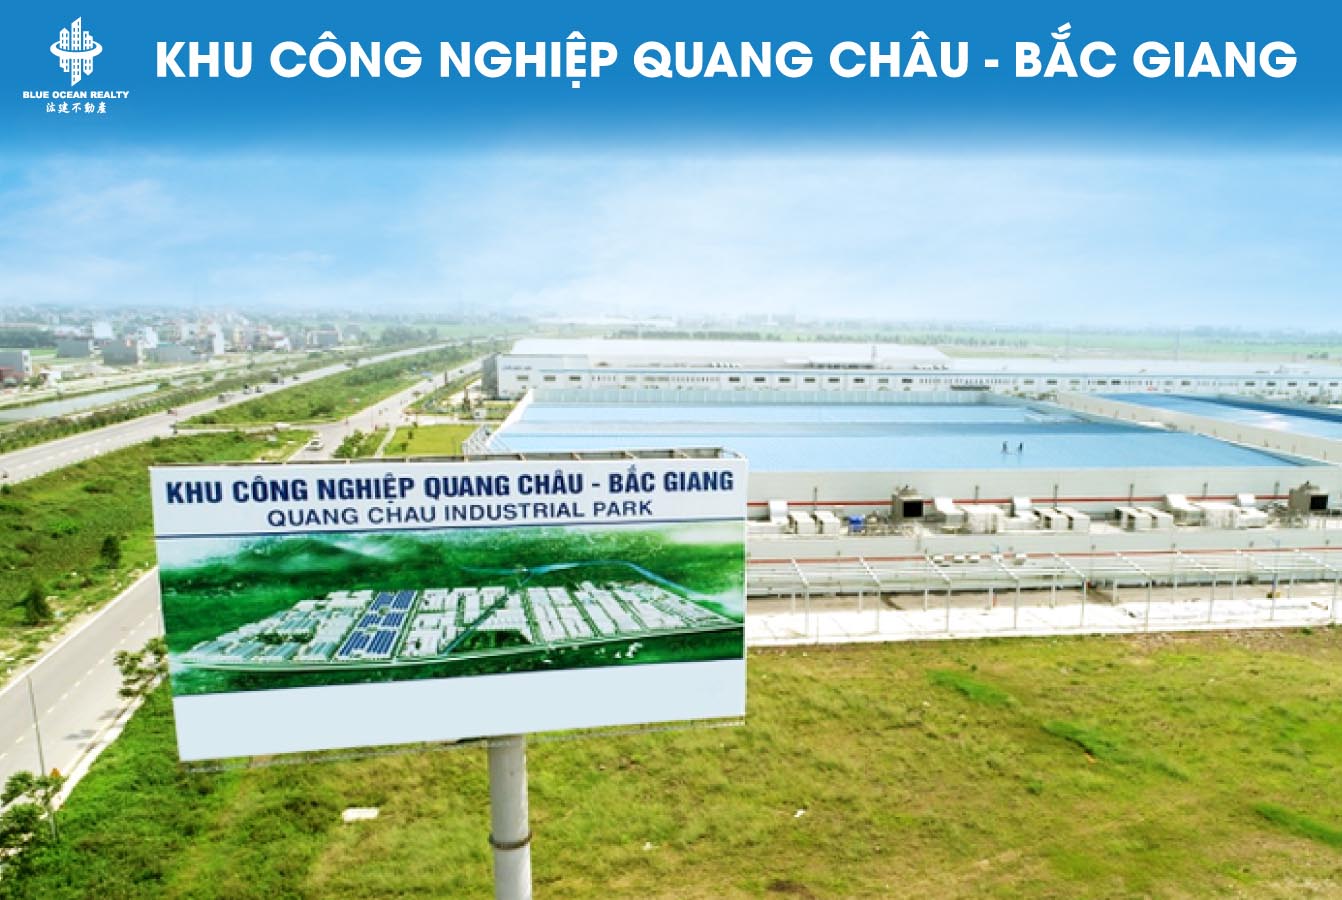 Quang-Chau-Bac-giang